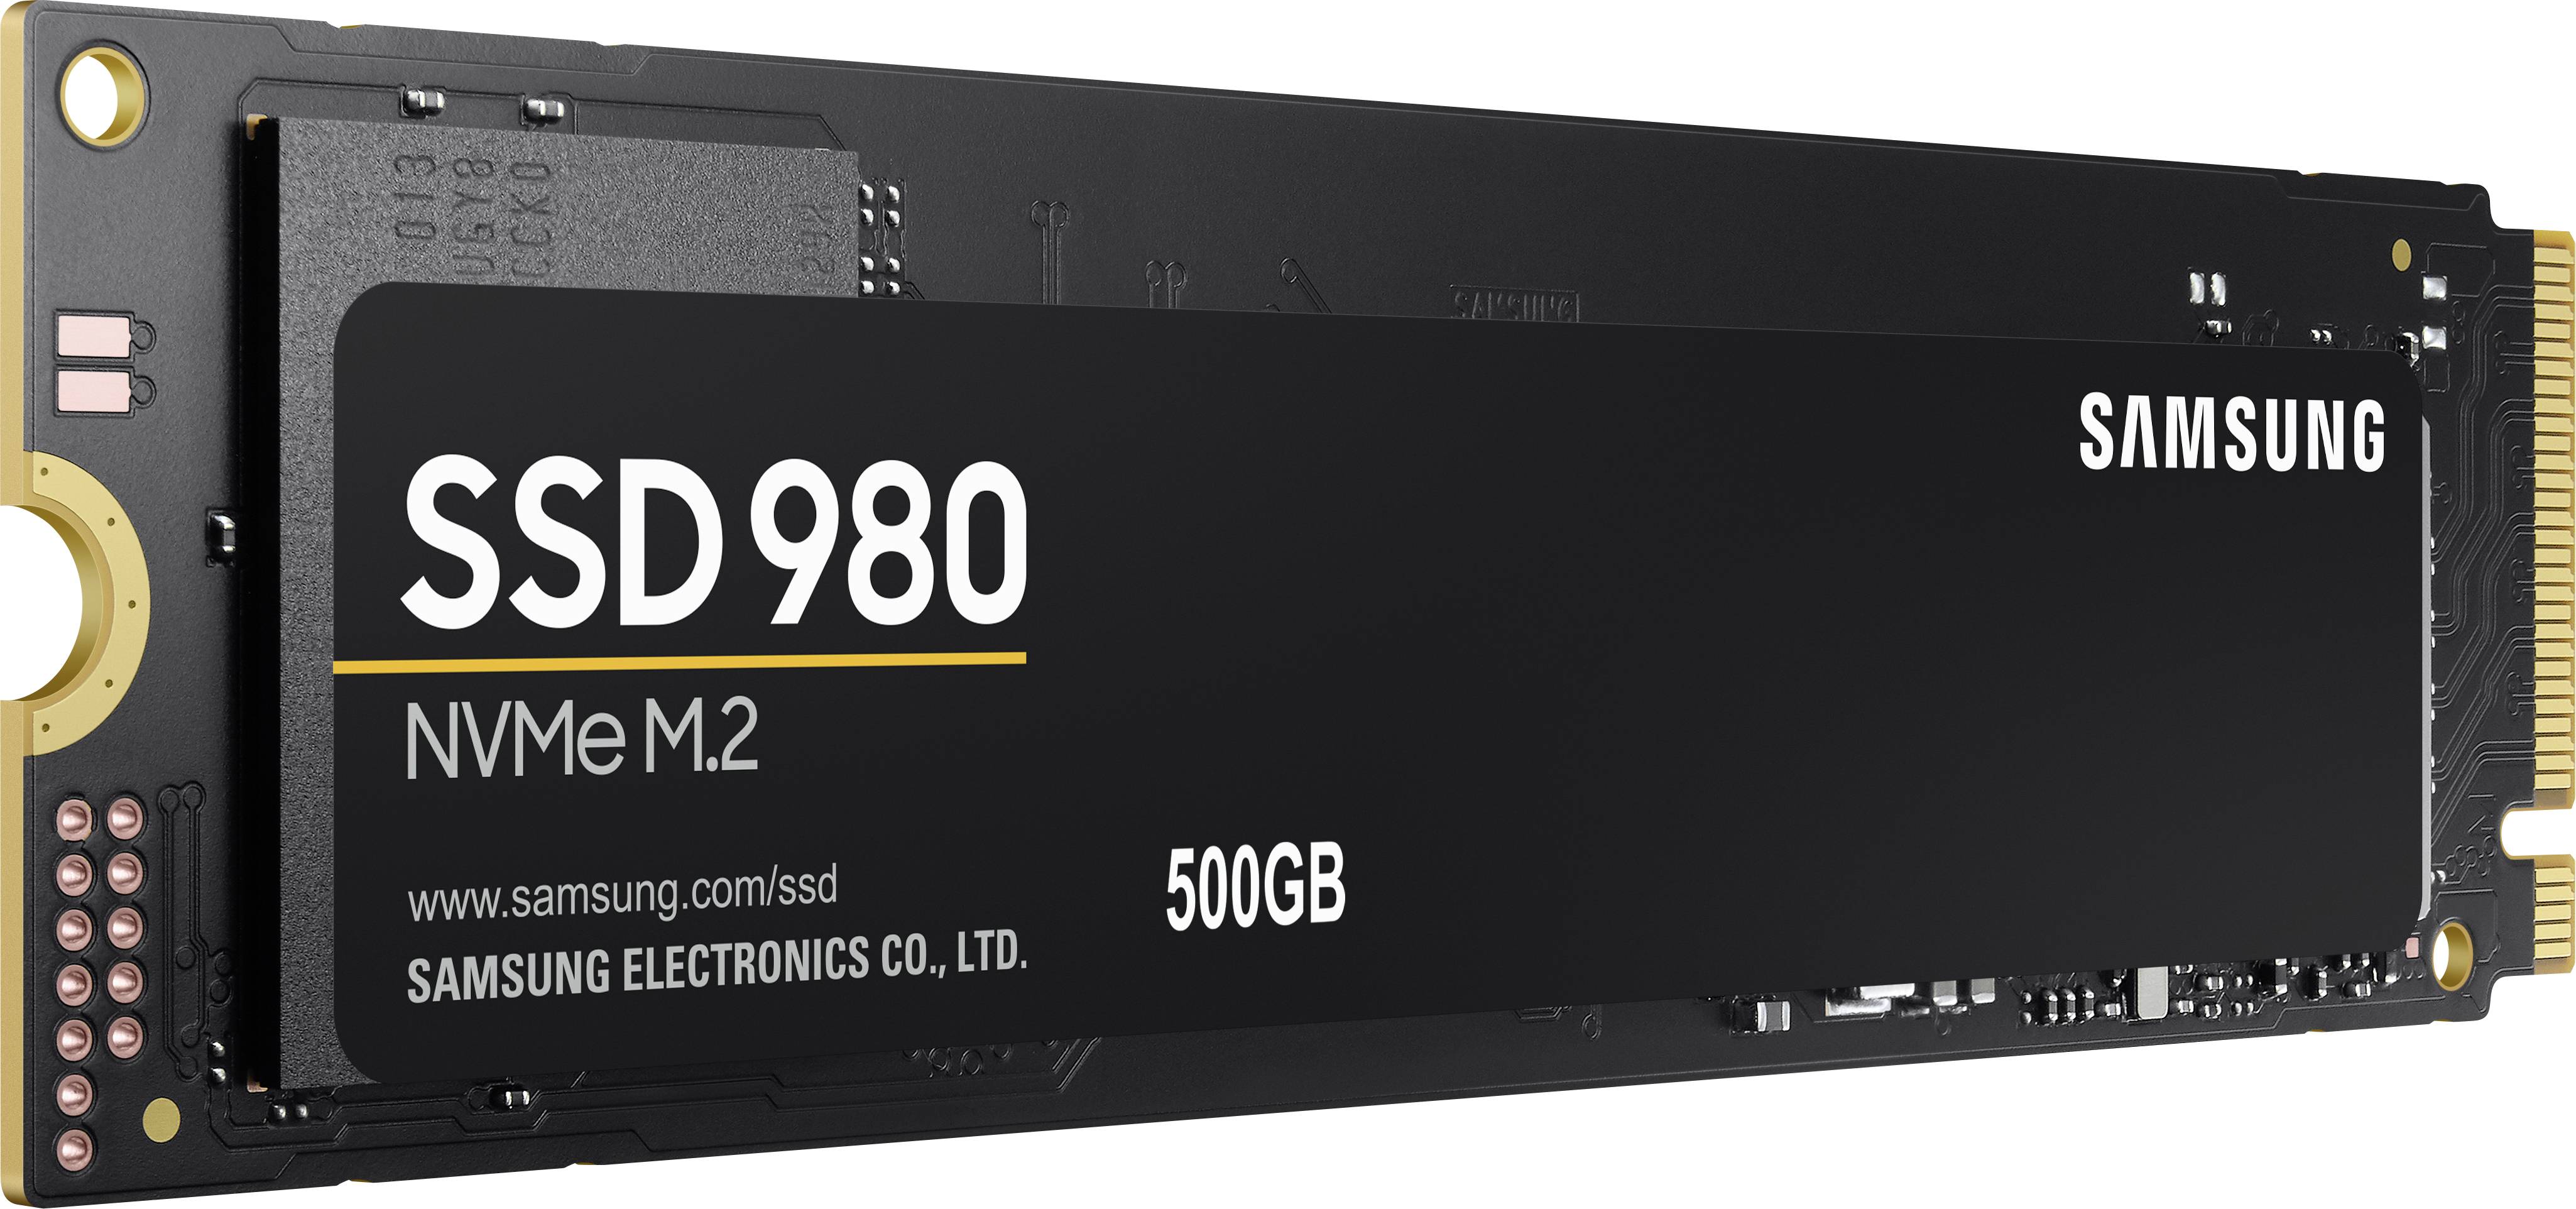 980 500gb. SSD m2 Samsung. SSD m2 Samsung 980. SSD Samsung 980 MZ. SSD 980 GB Samsung.